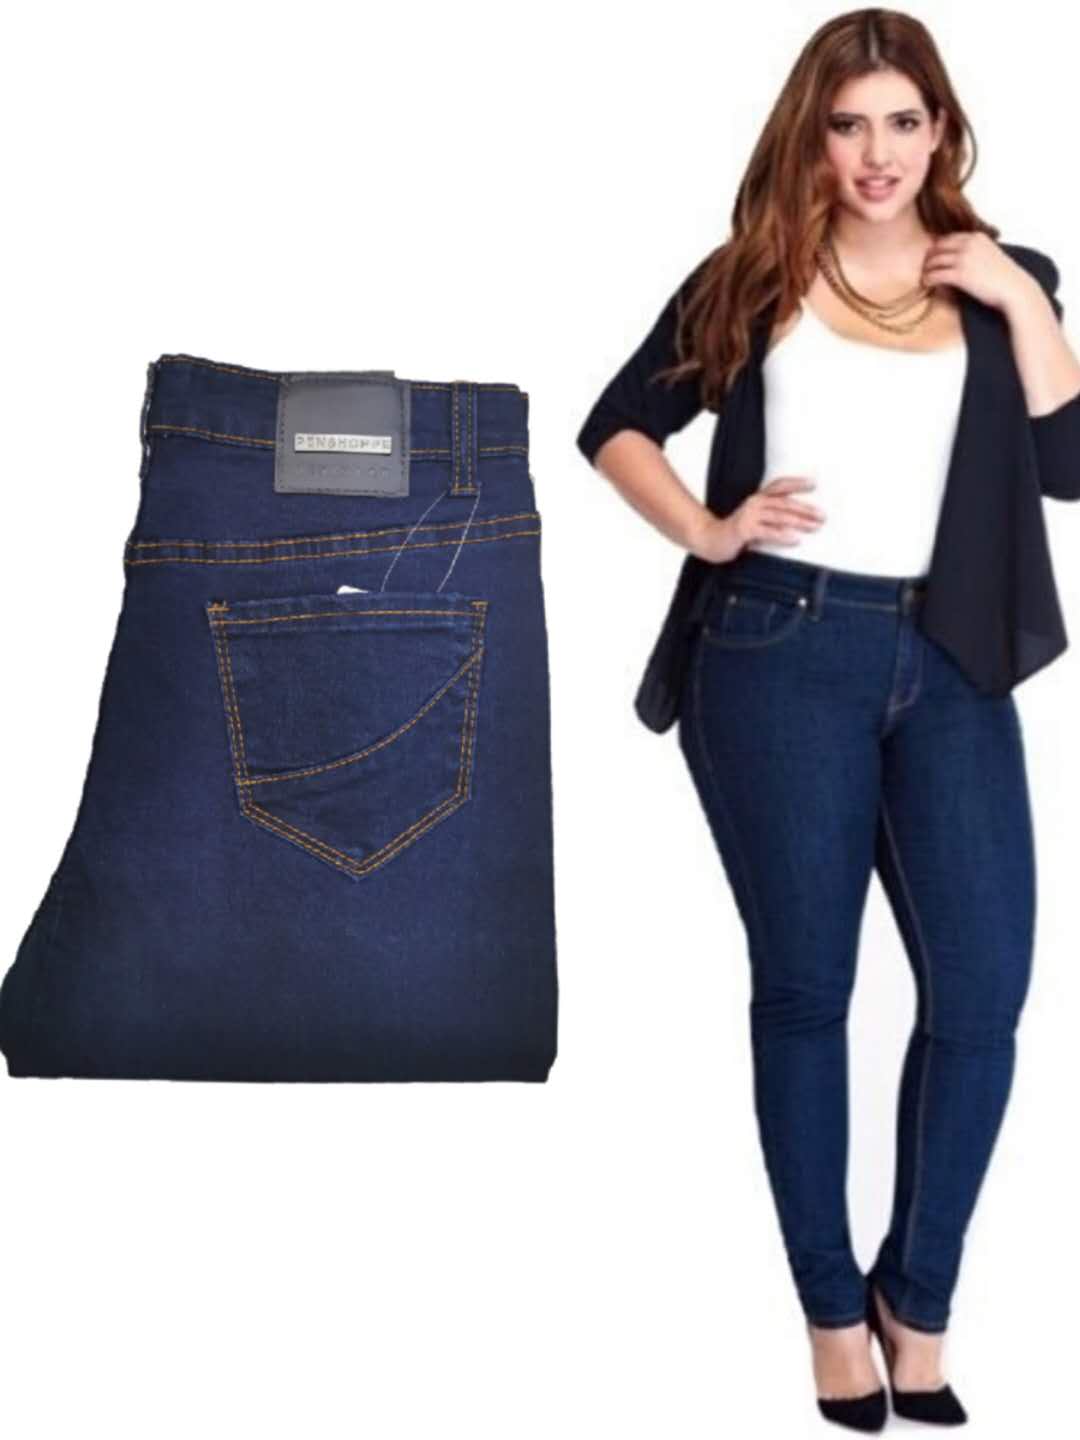 big jeans women